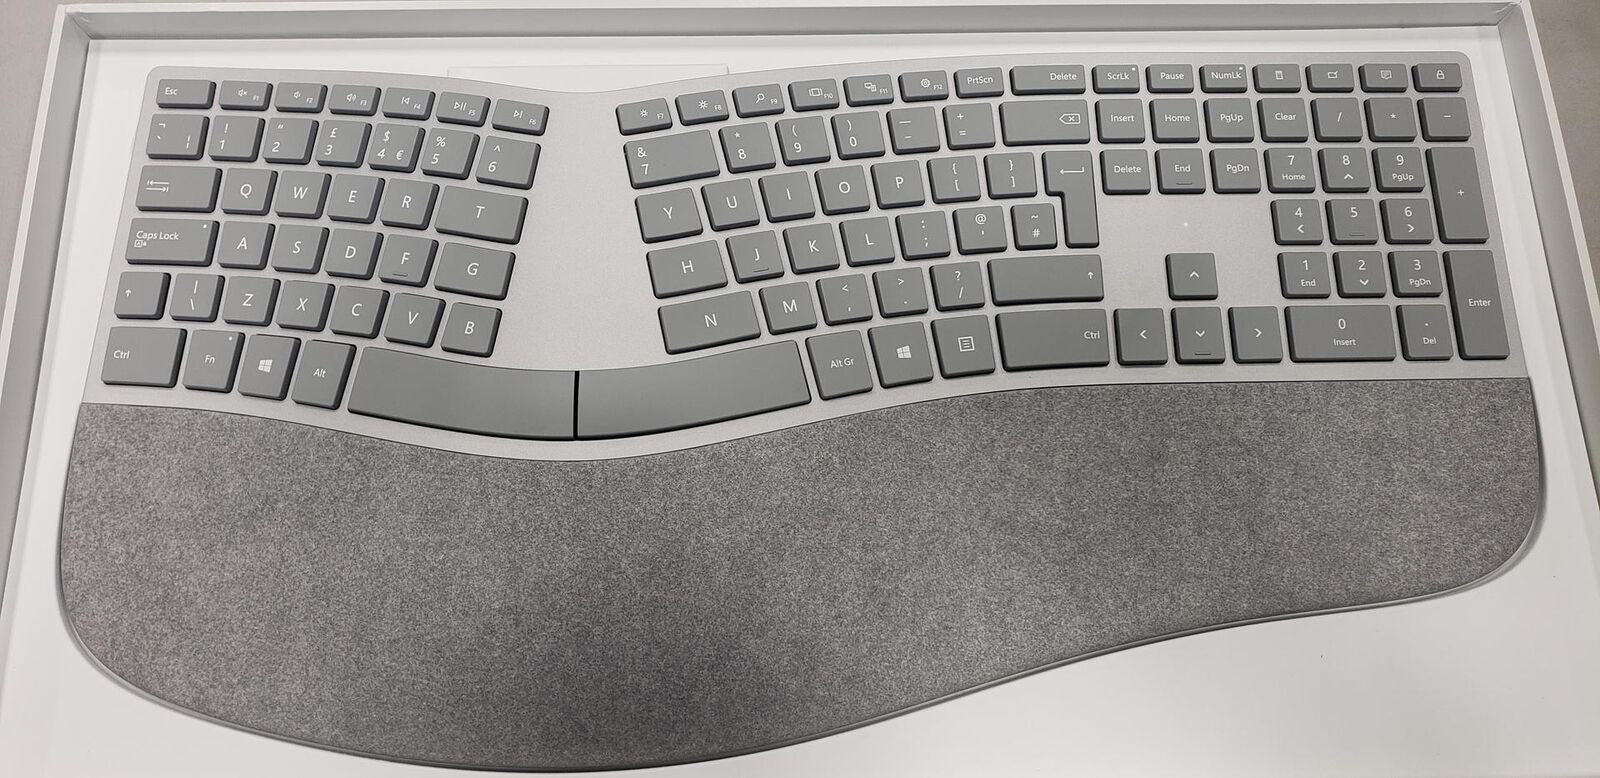 Microsoft Surface Ergonomic Keyboard SC Bluetooth English UK US Hdwr Gray